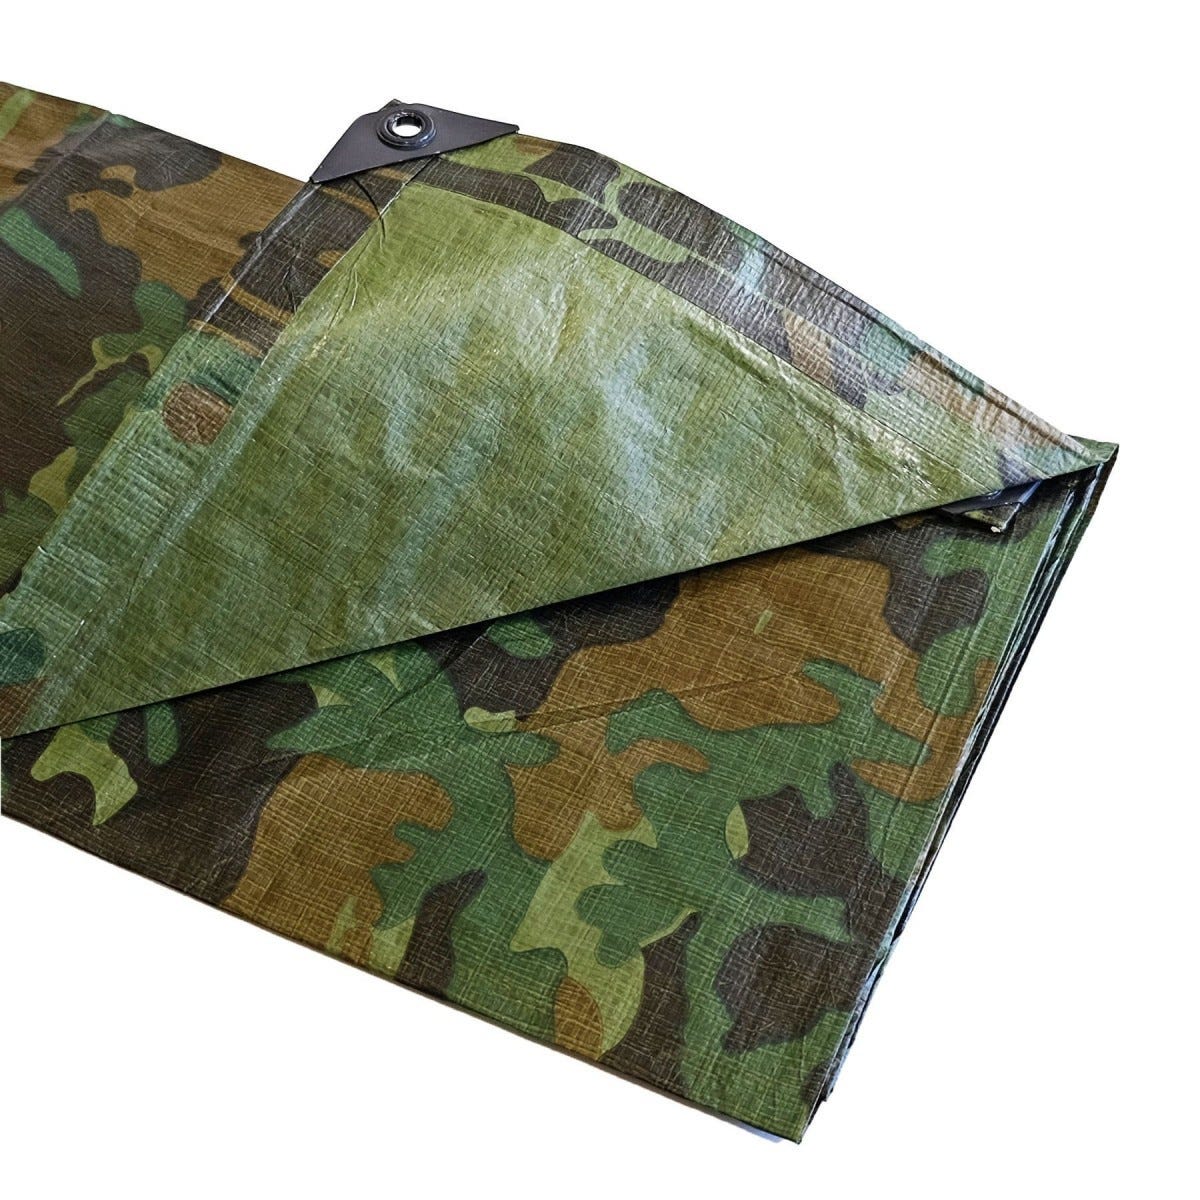 Bâche Camouflage 3,6x5 m - TECPLAST 150CM - Haute Qualité - Bâche militaire de protection imperméable 3